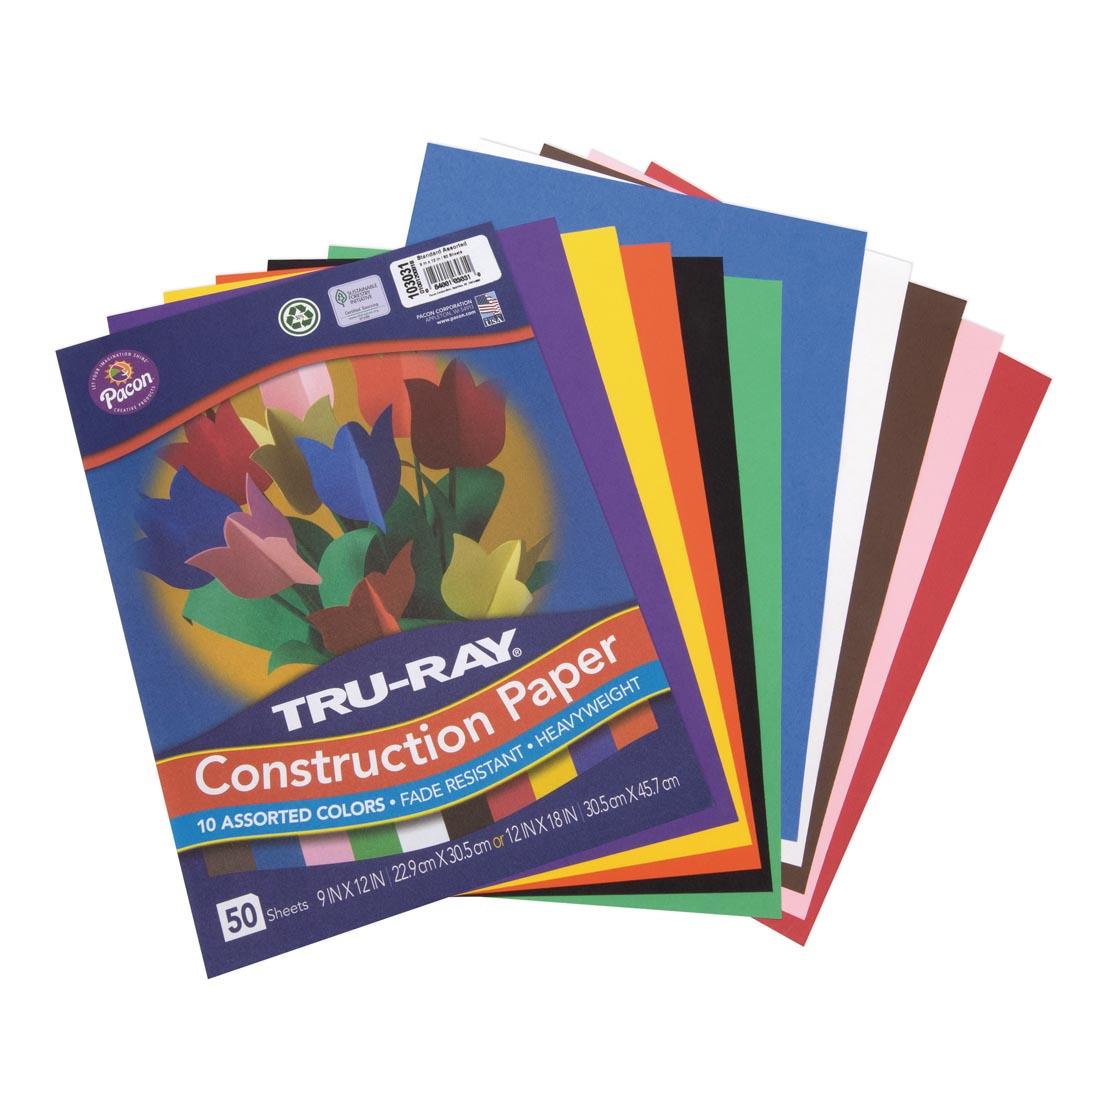 Tru-Ray Construction Paper 9x12" Classic Colors Assortment